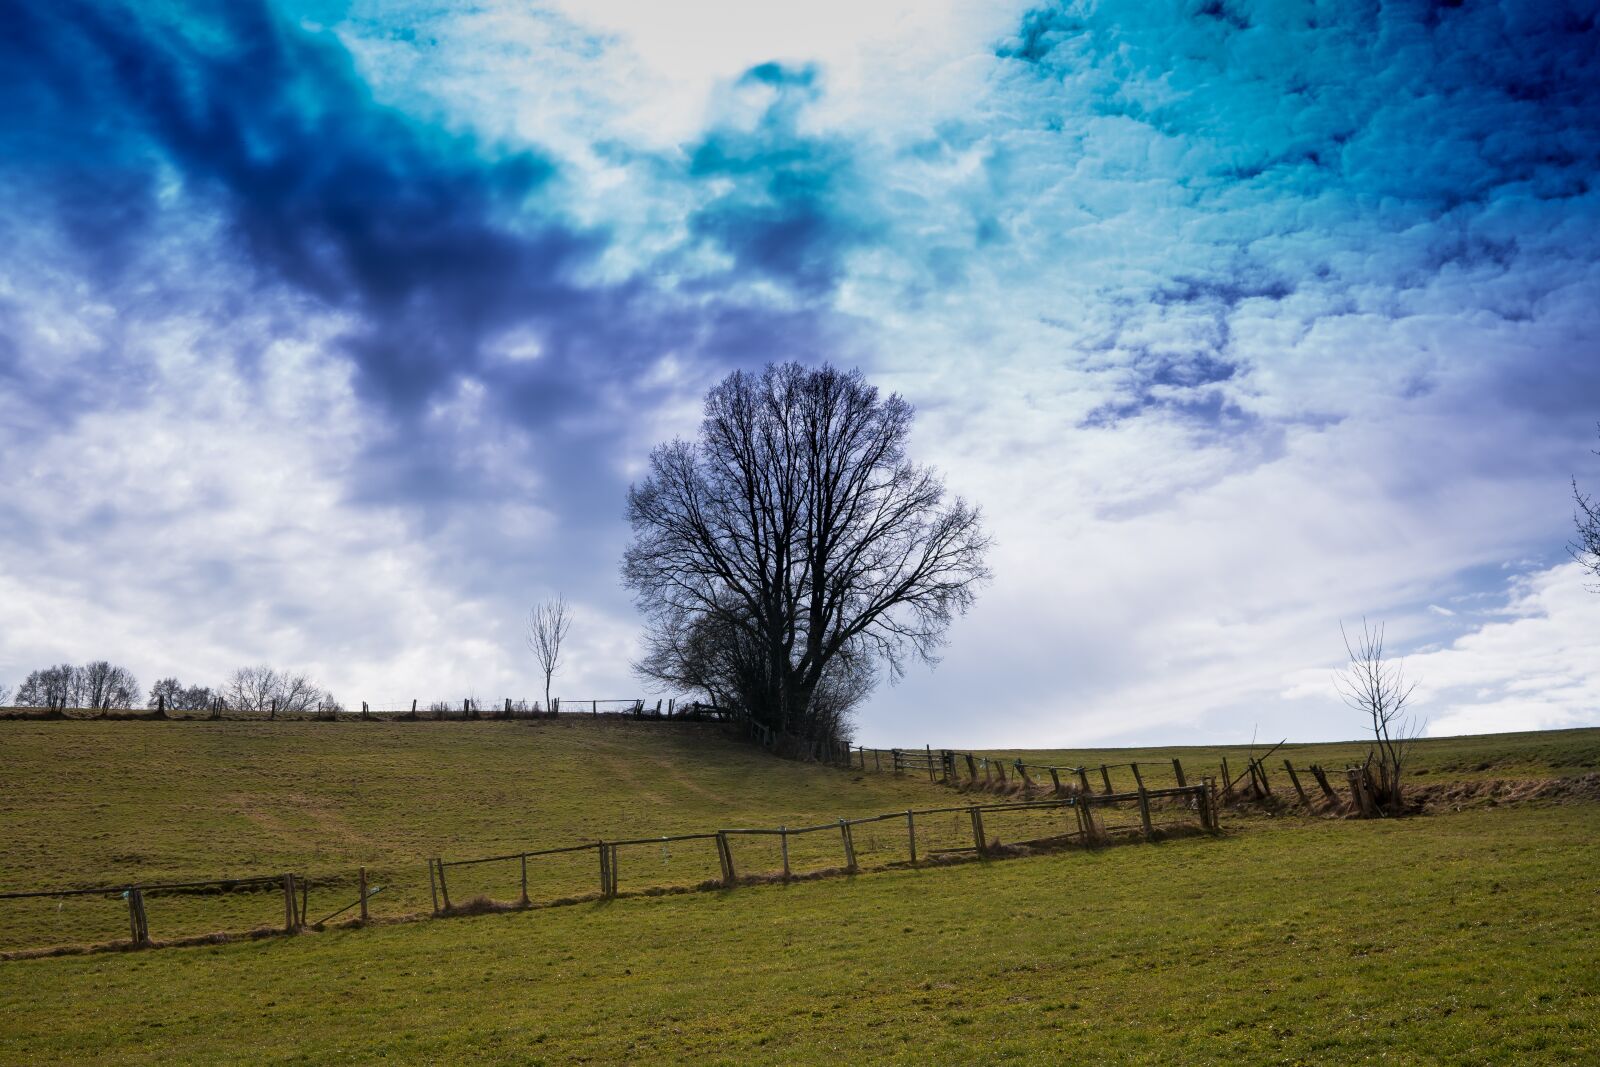 Sony a6300 sample photo. Field, sky, tree photography